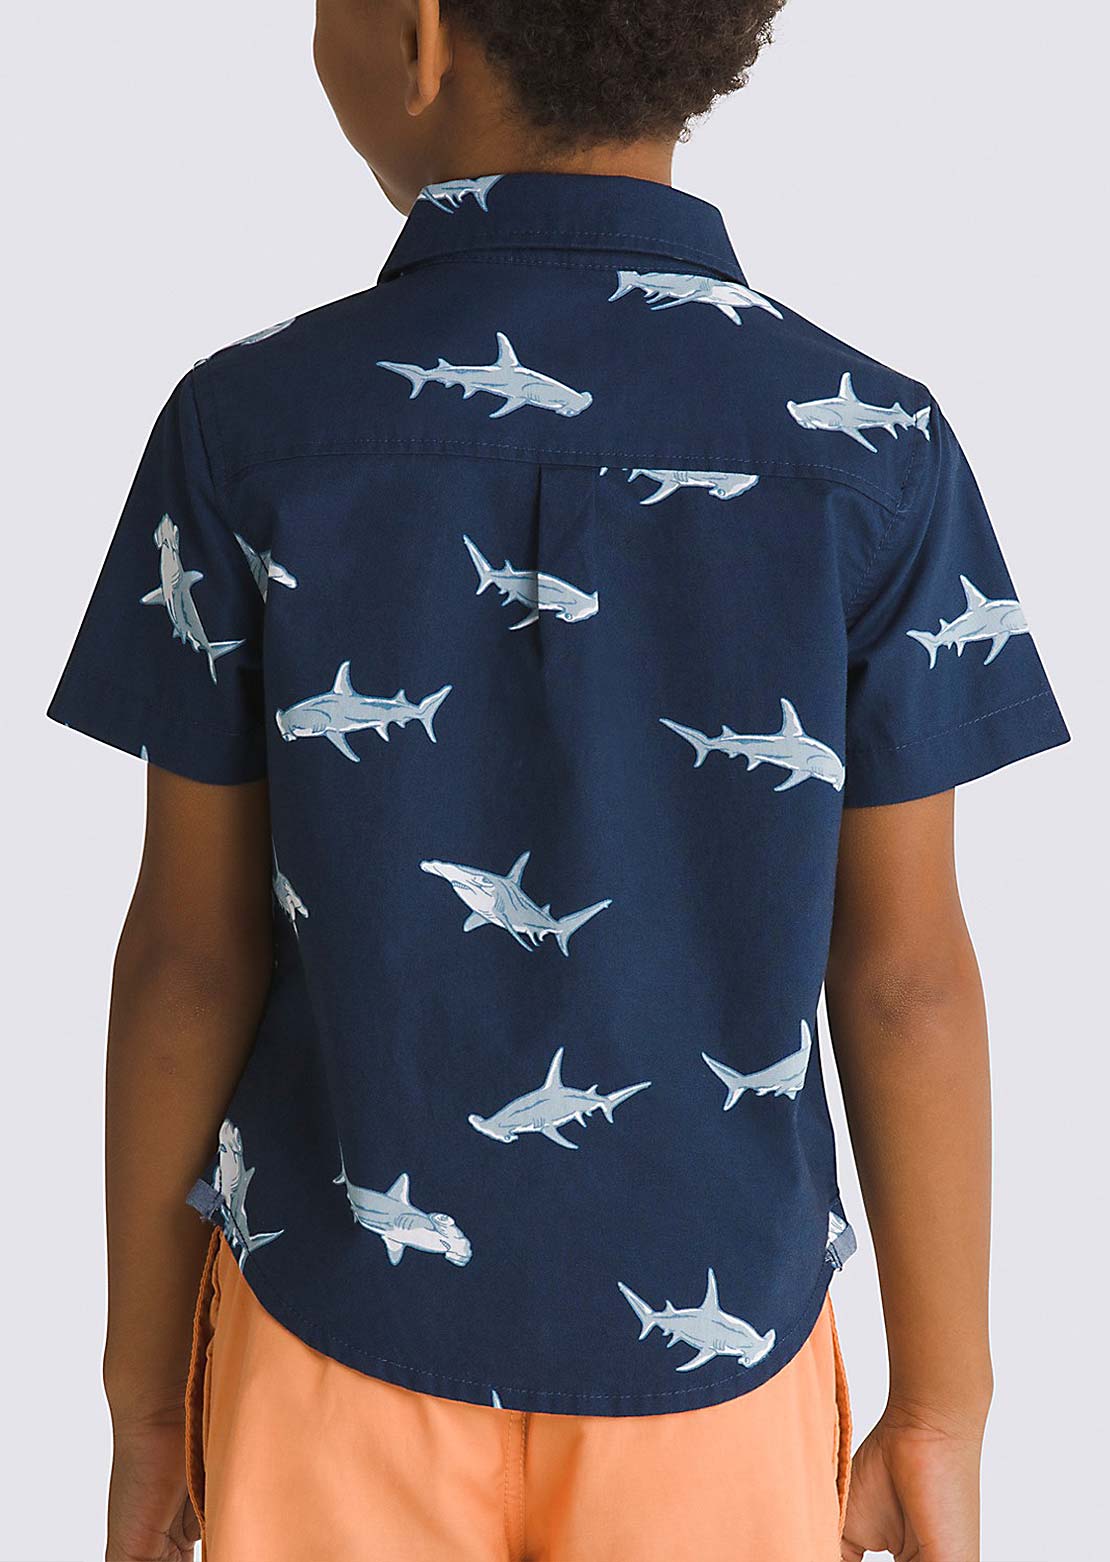 Vans Toddler Shark SS T-Shirt Dress Blues